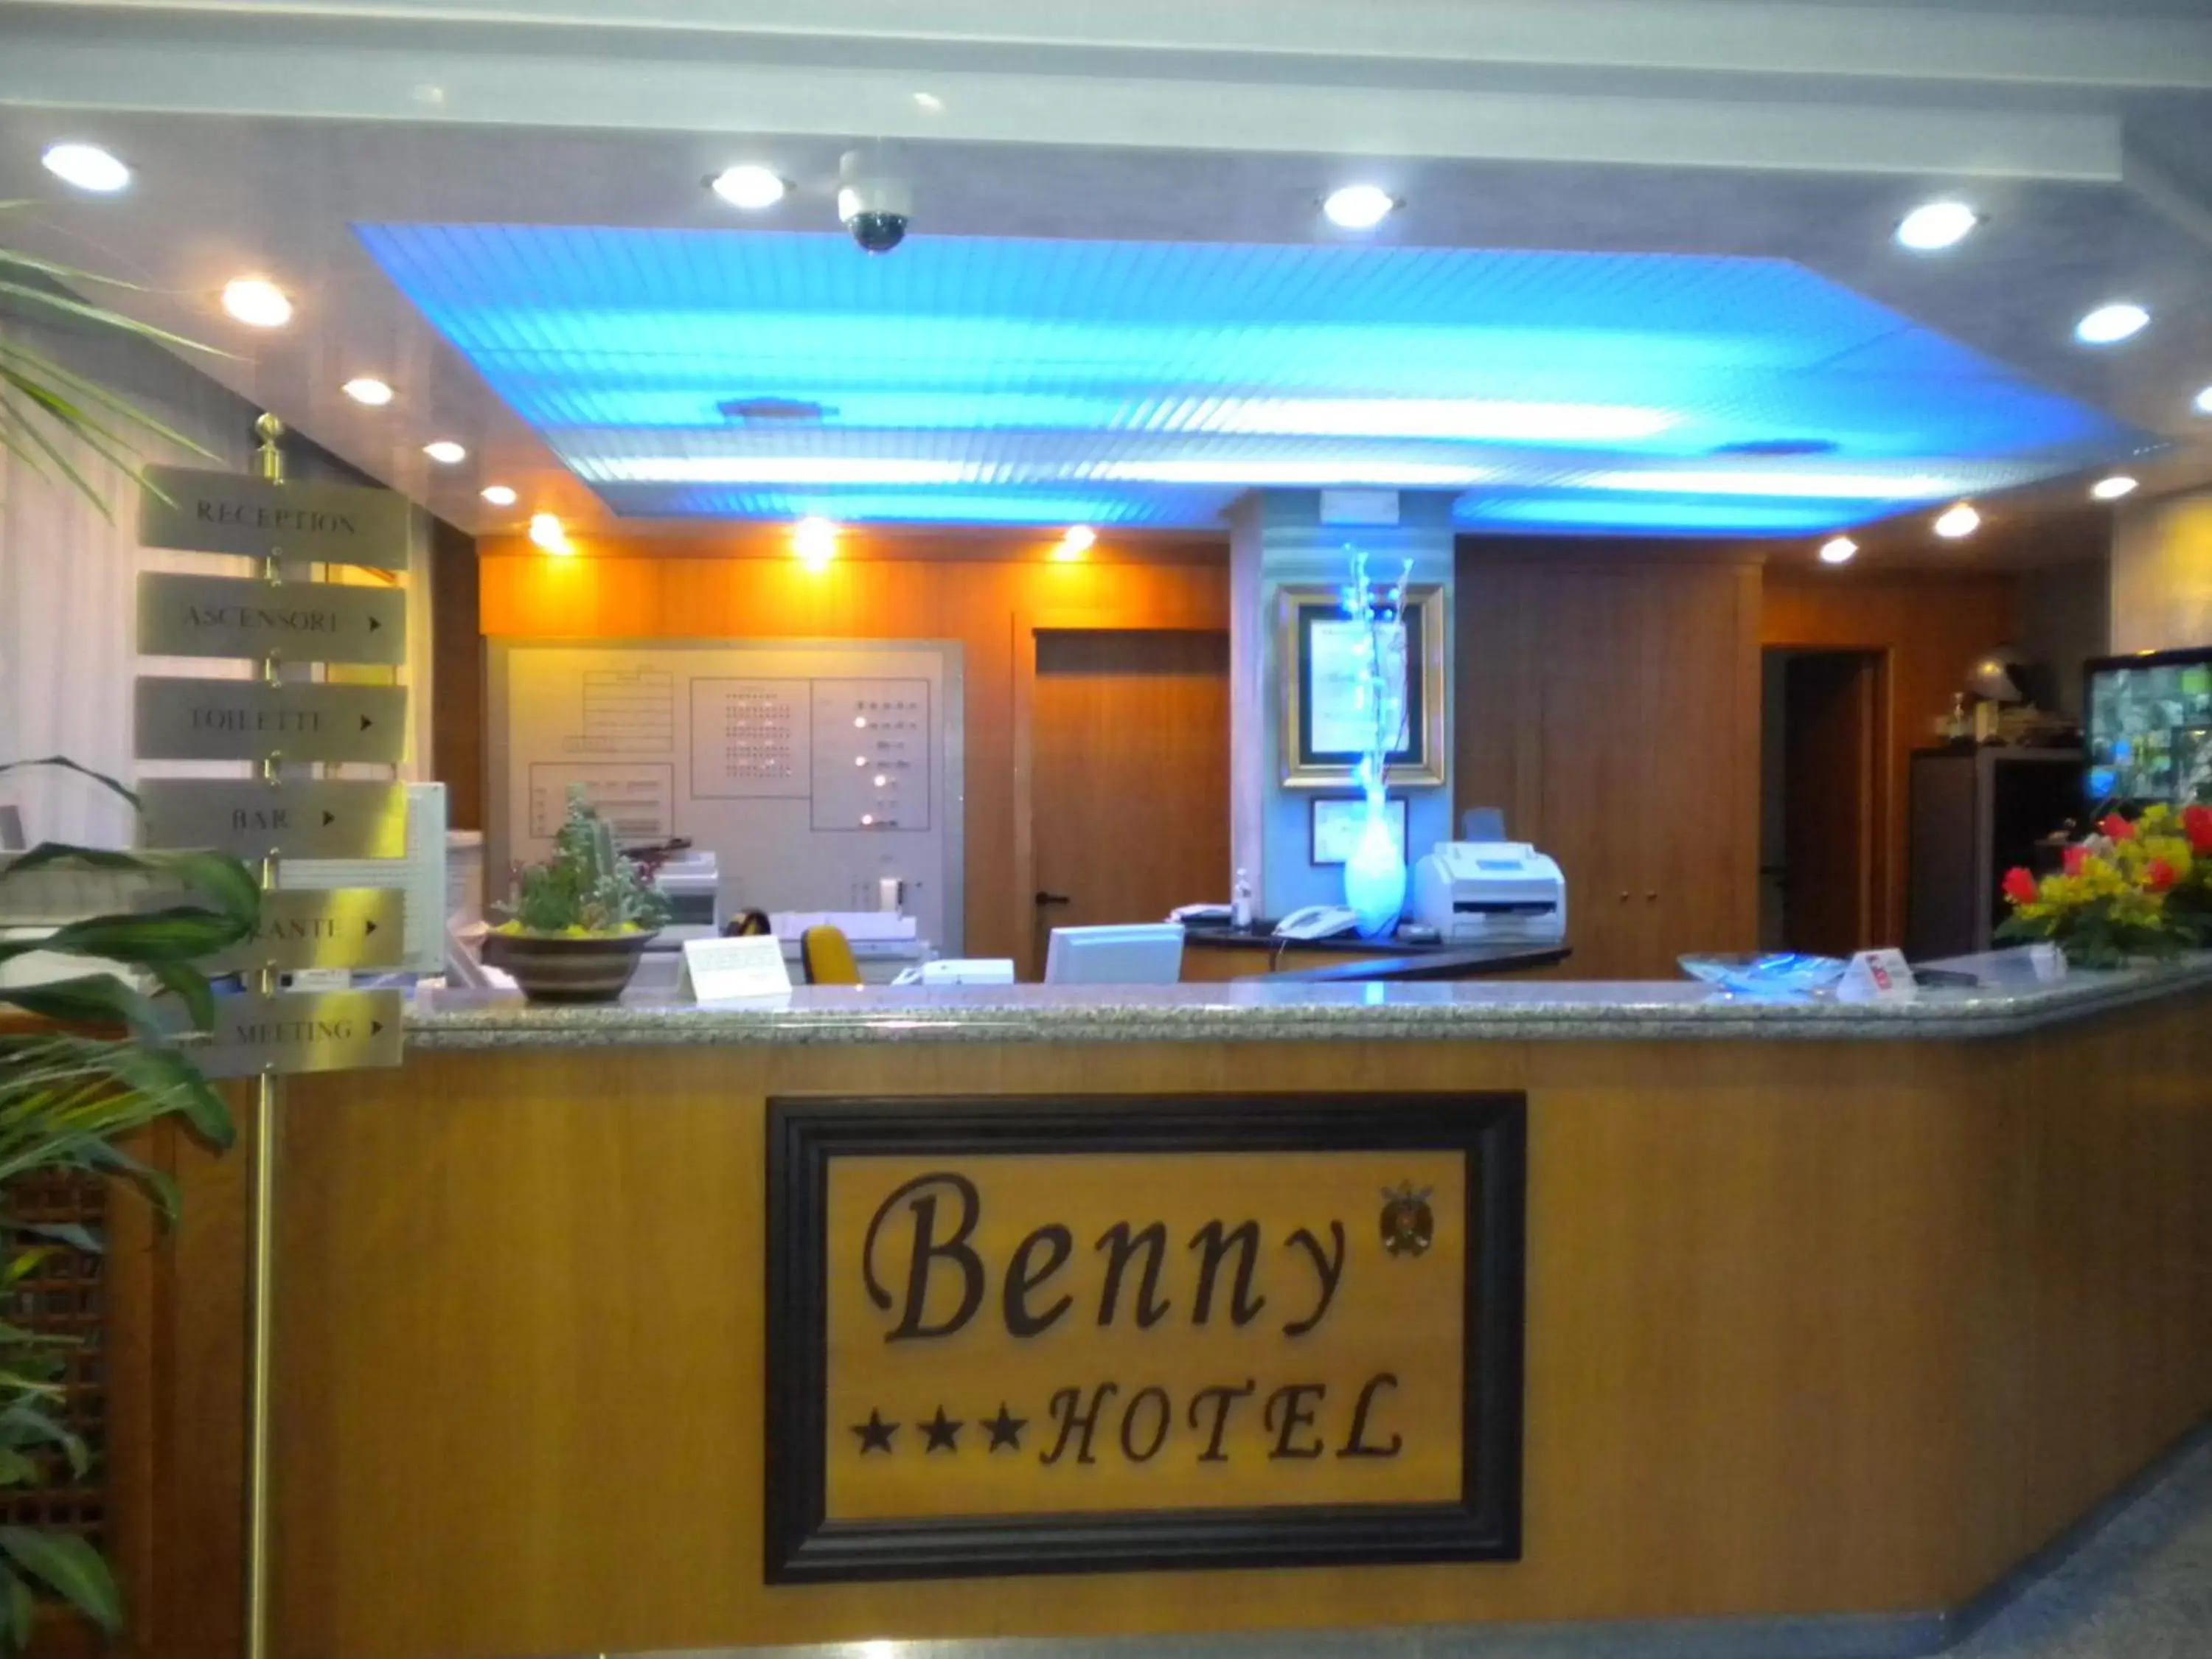 Lobby or reception, Lobby/Reception in Benny Hotel